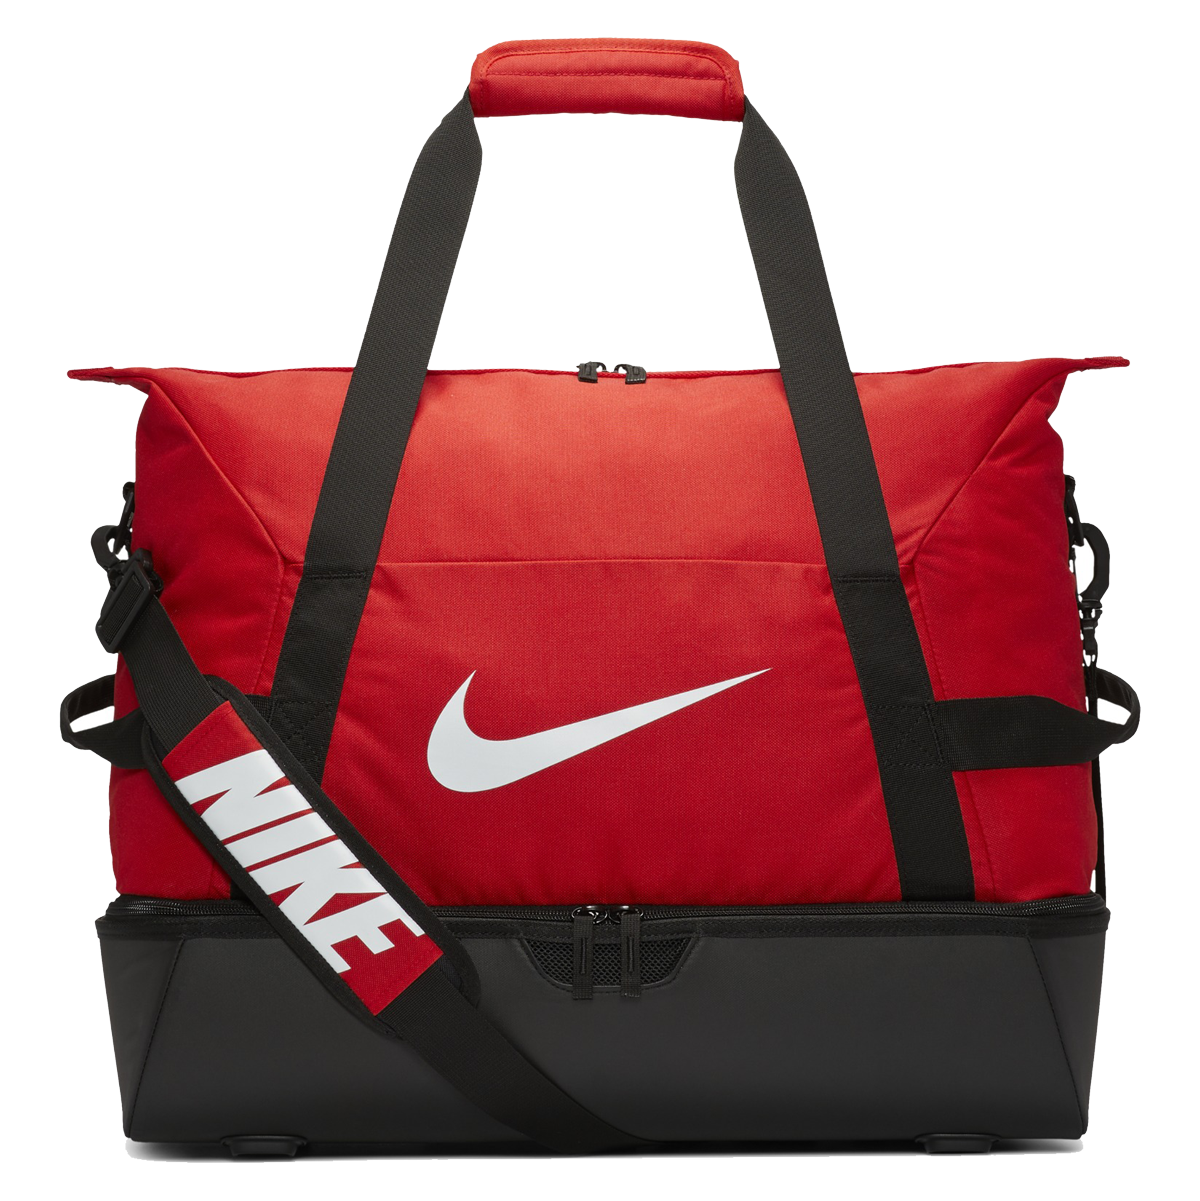 Nike Academy Team Hardcase M červená/černá/bílá Uk MISC